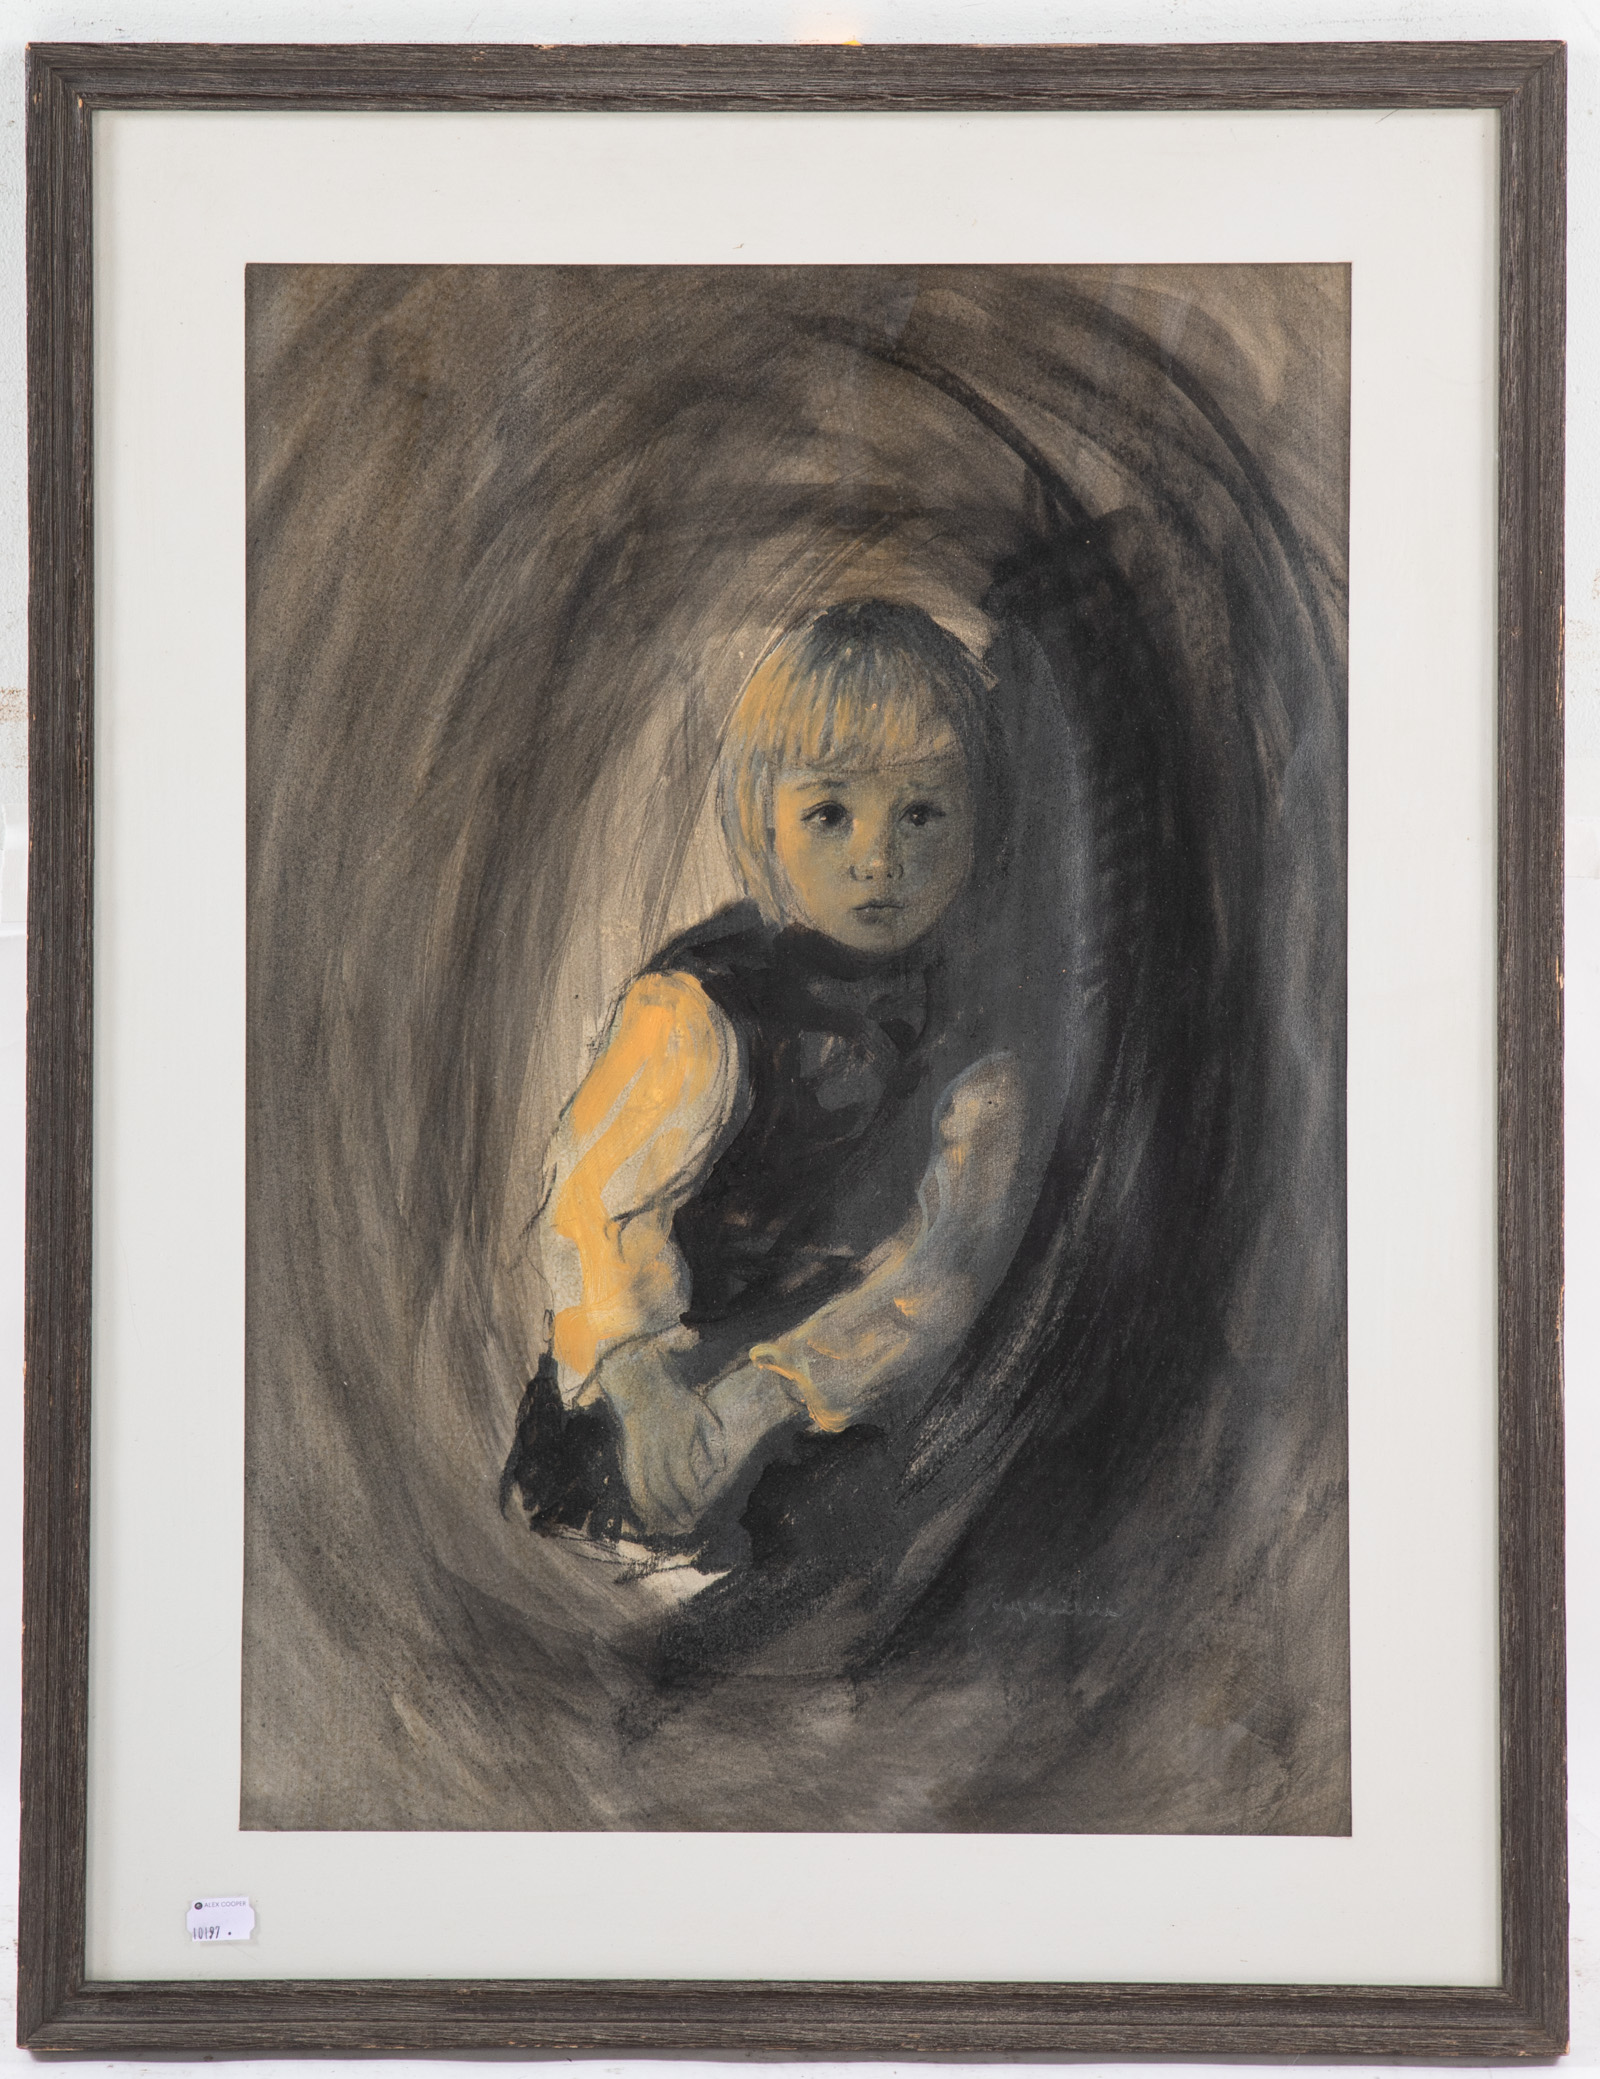 ROLF. PORTRAIT OF A CHILD, GOUACHE